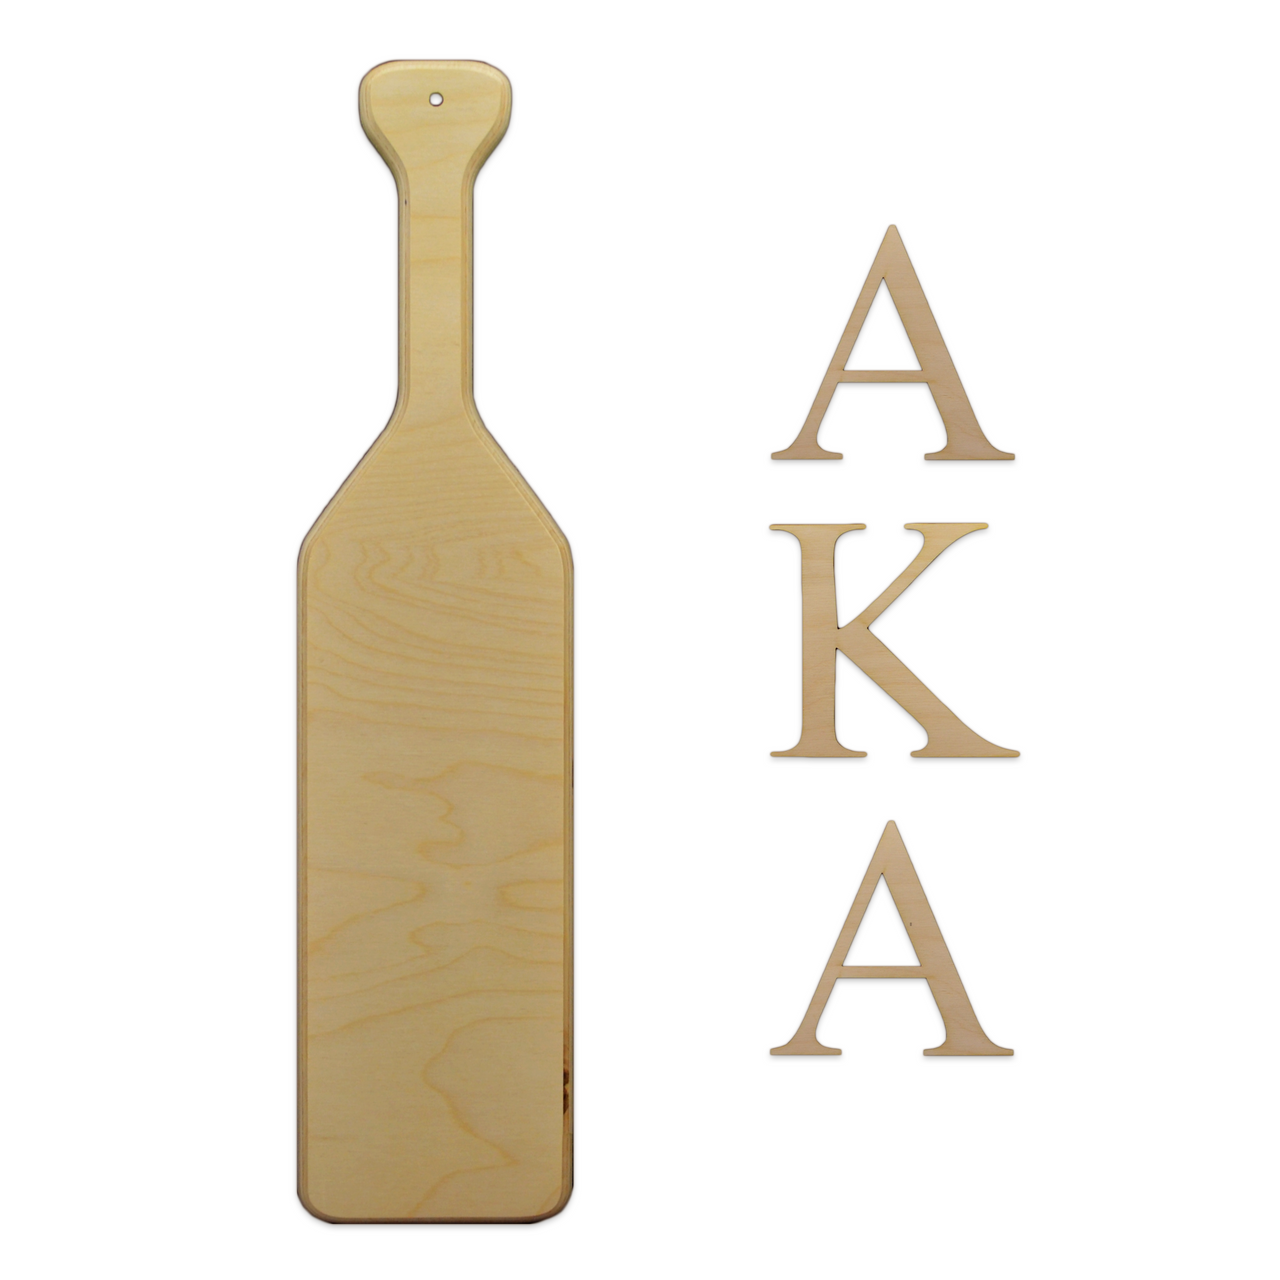 Oar sorority greek paddle letter kit greek letters letters and numbers